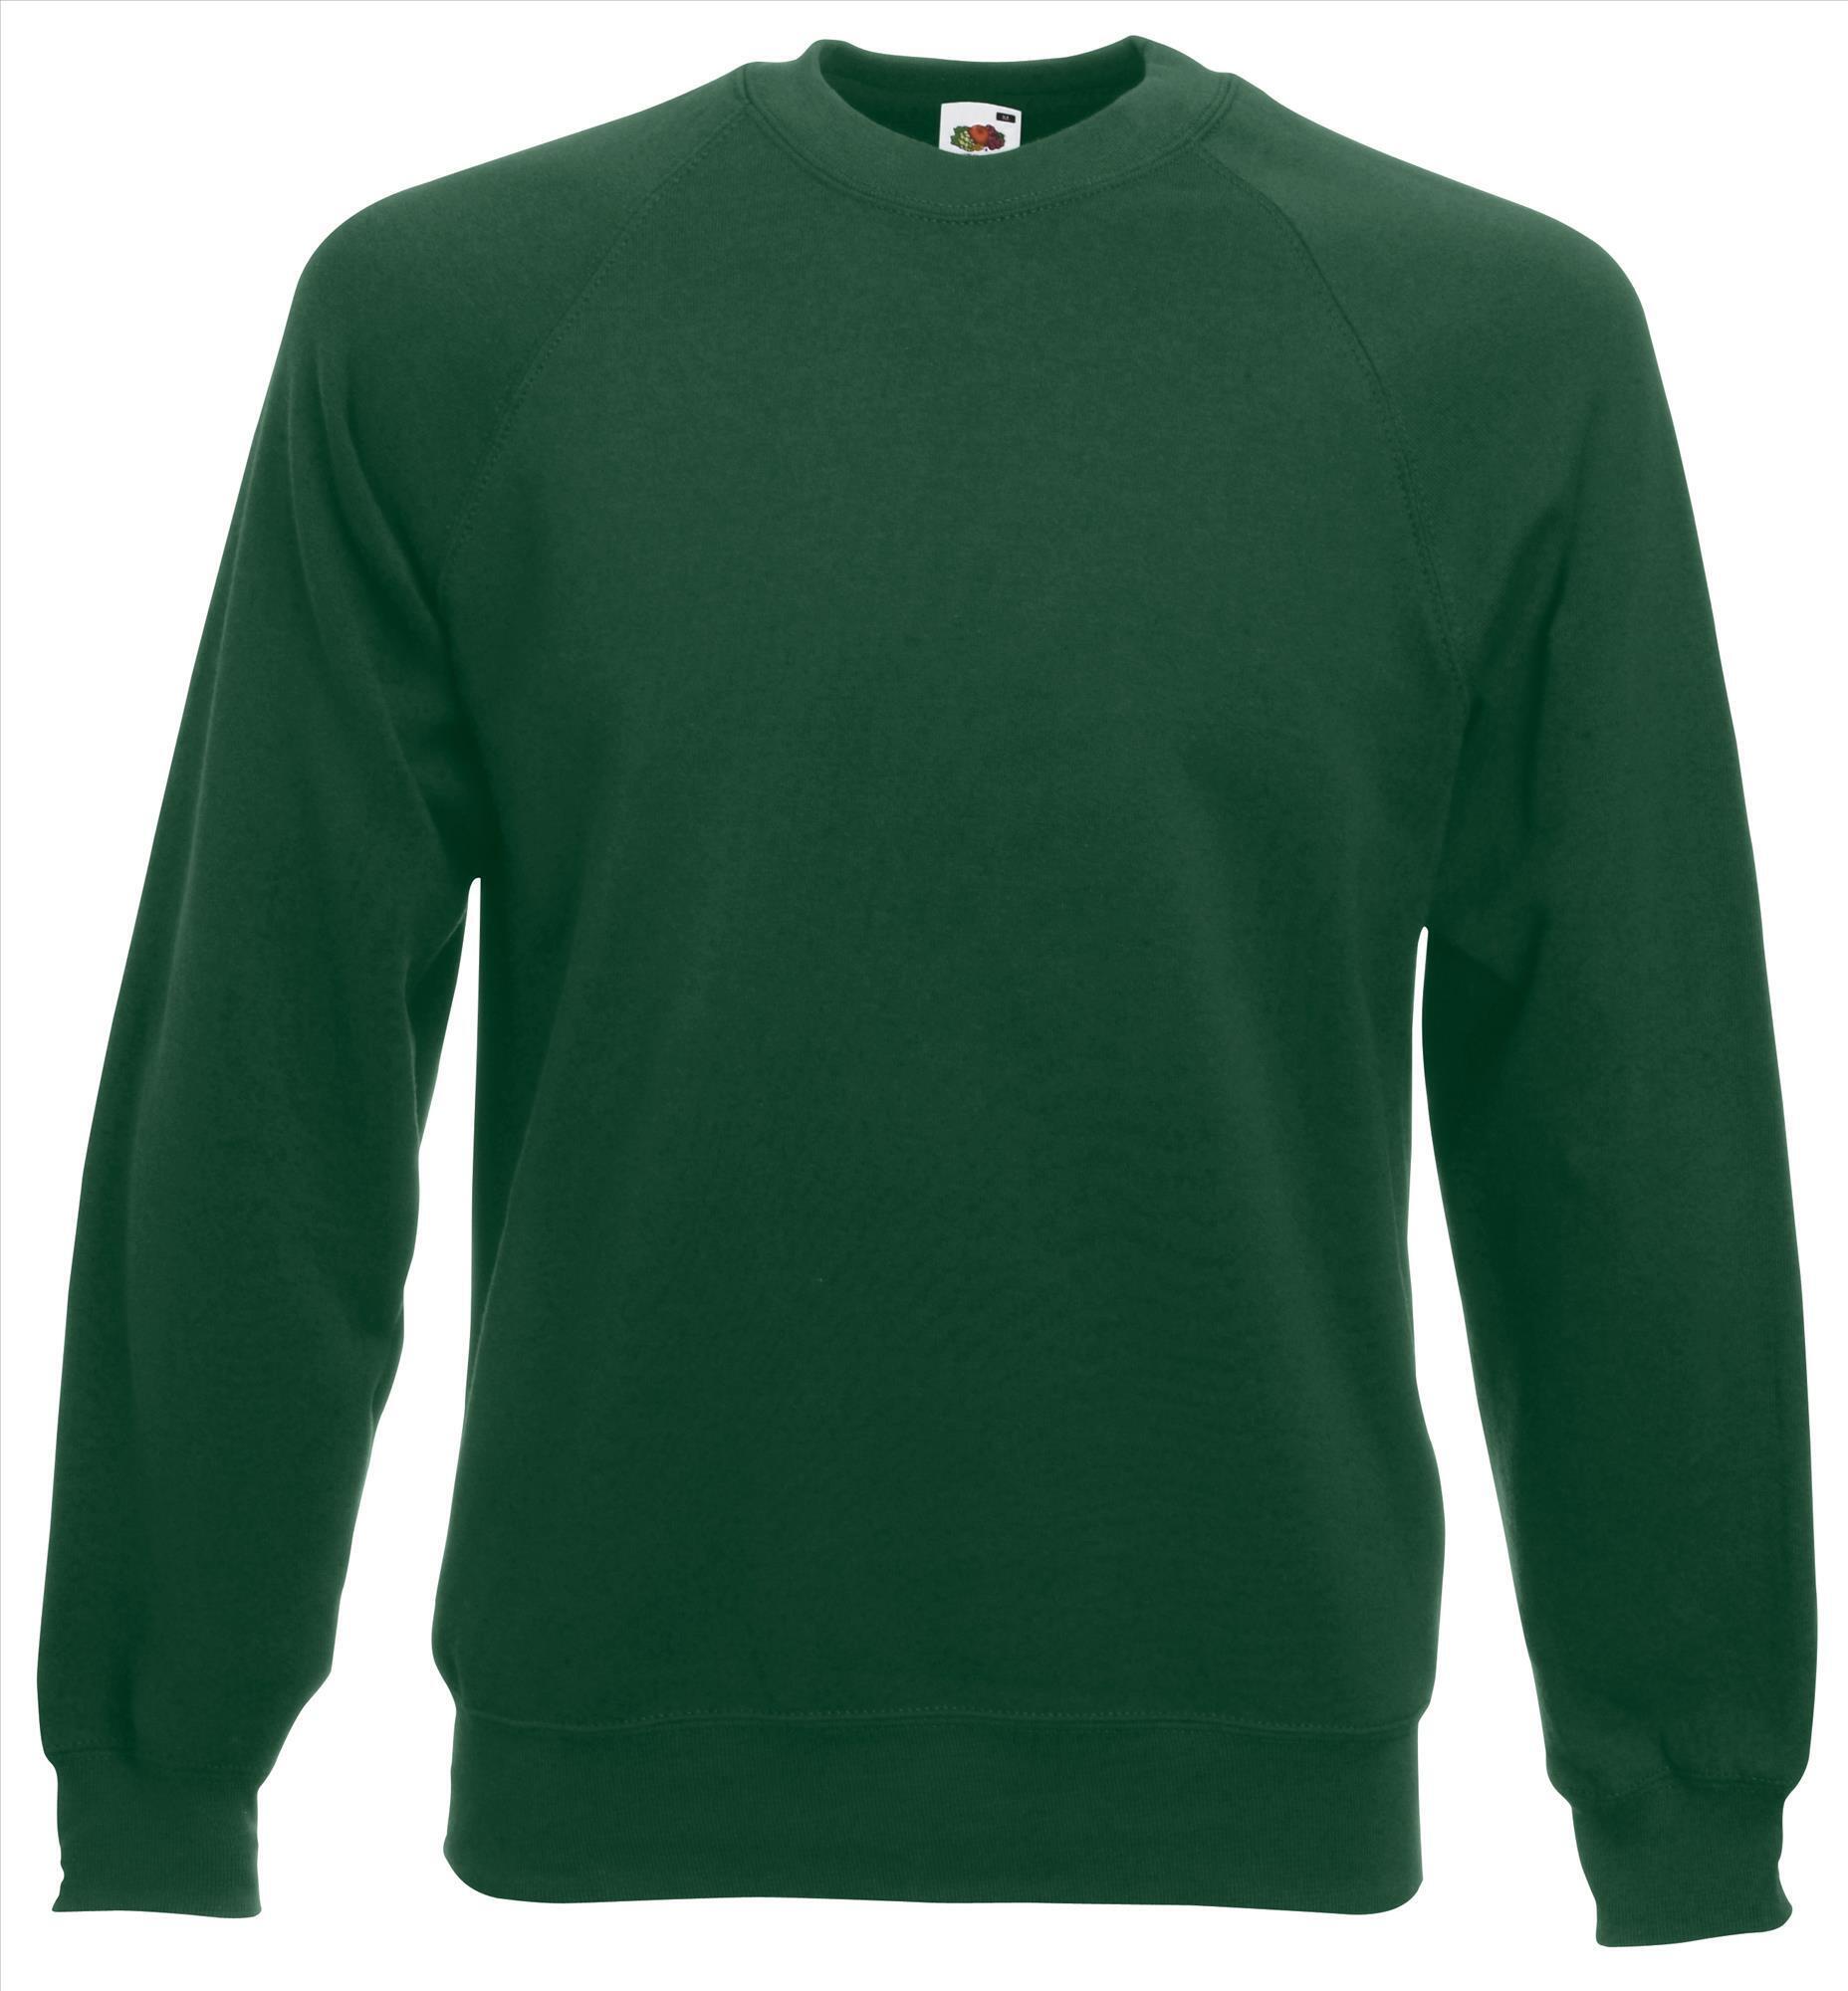 Sweater flessengroen voor mannen bedrukbaar te personaliseren sweatshirts